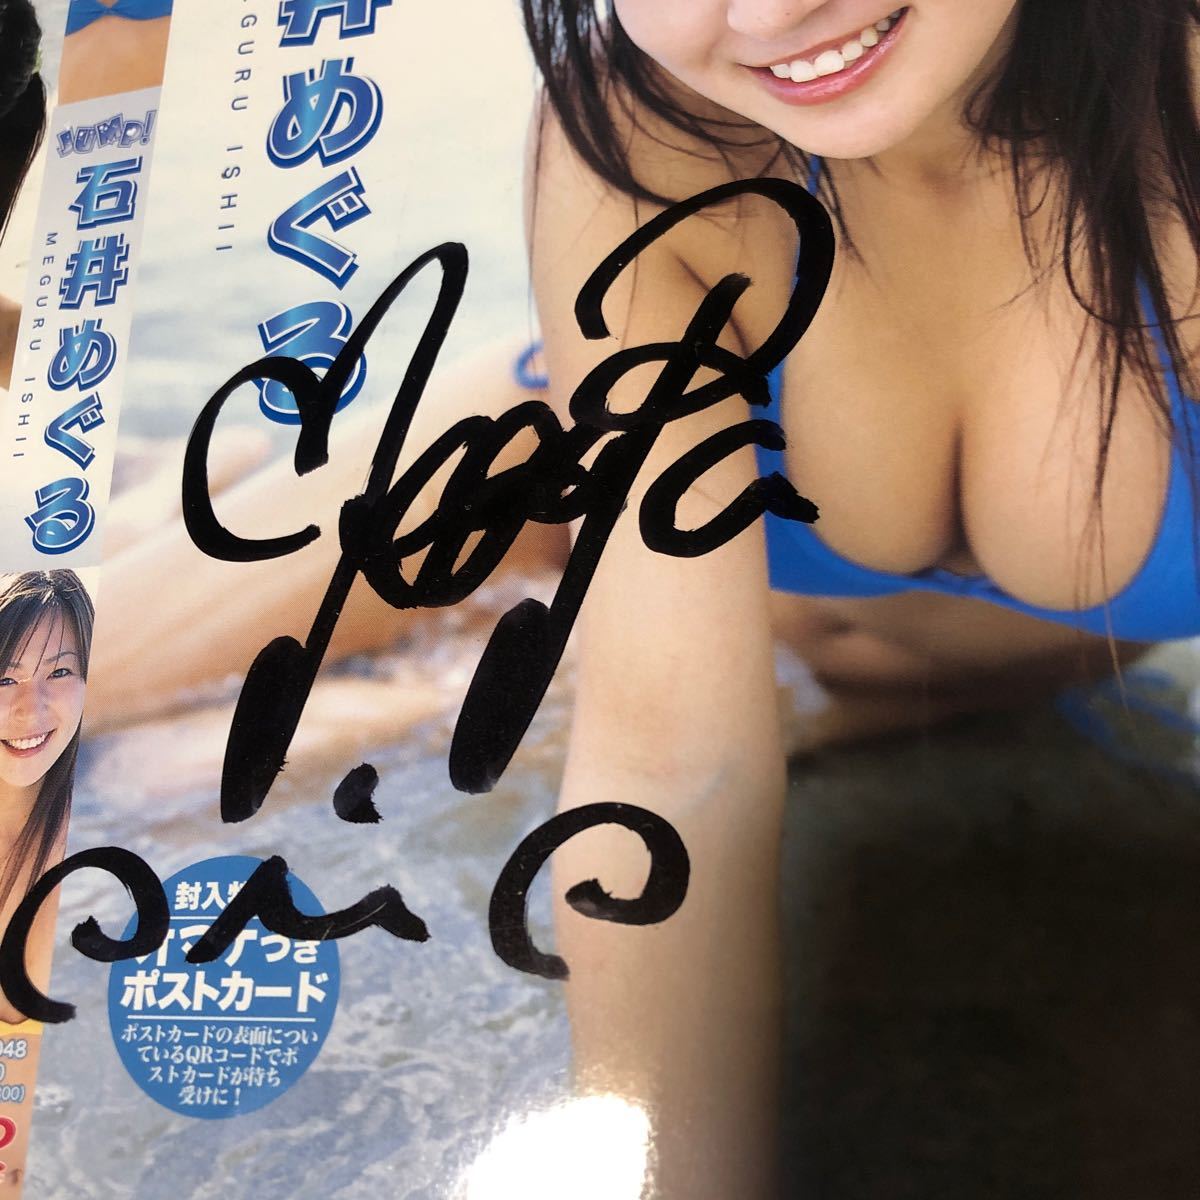  Ishii ... с автографом DVD жакет коллекционные карточки 2 шт. комплект 